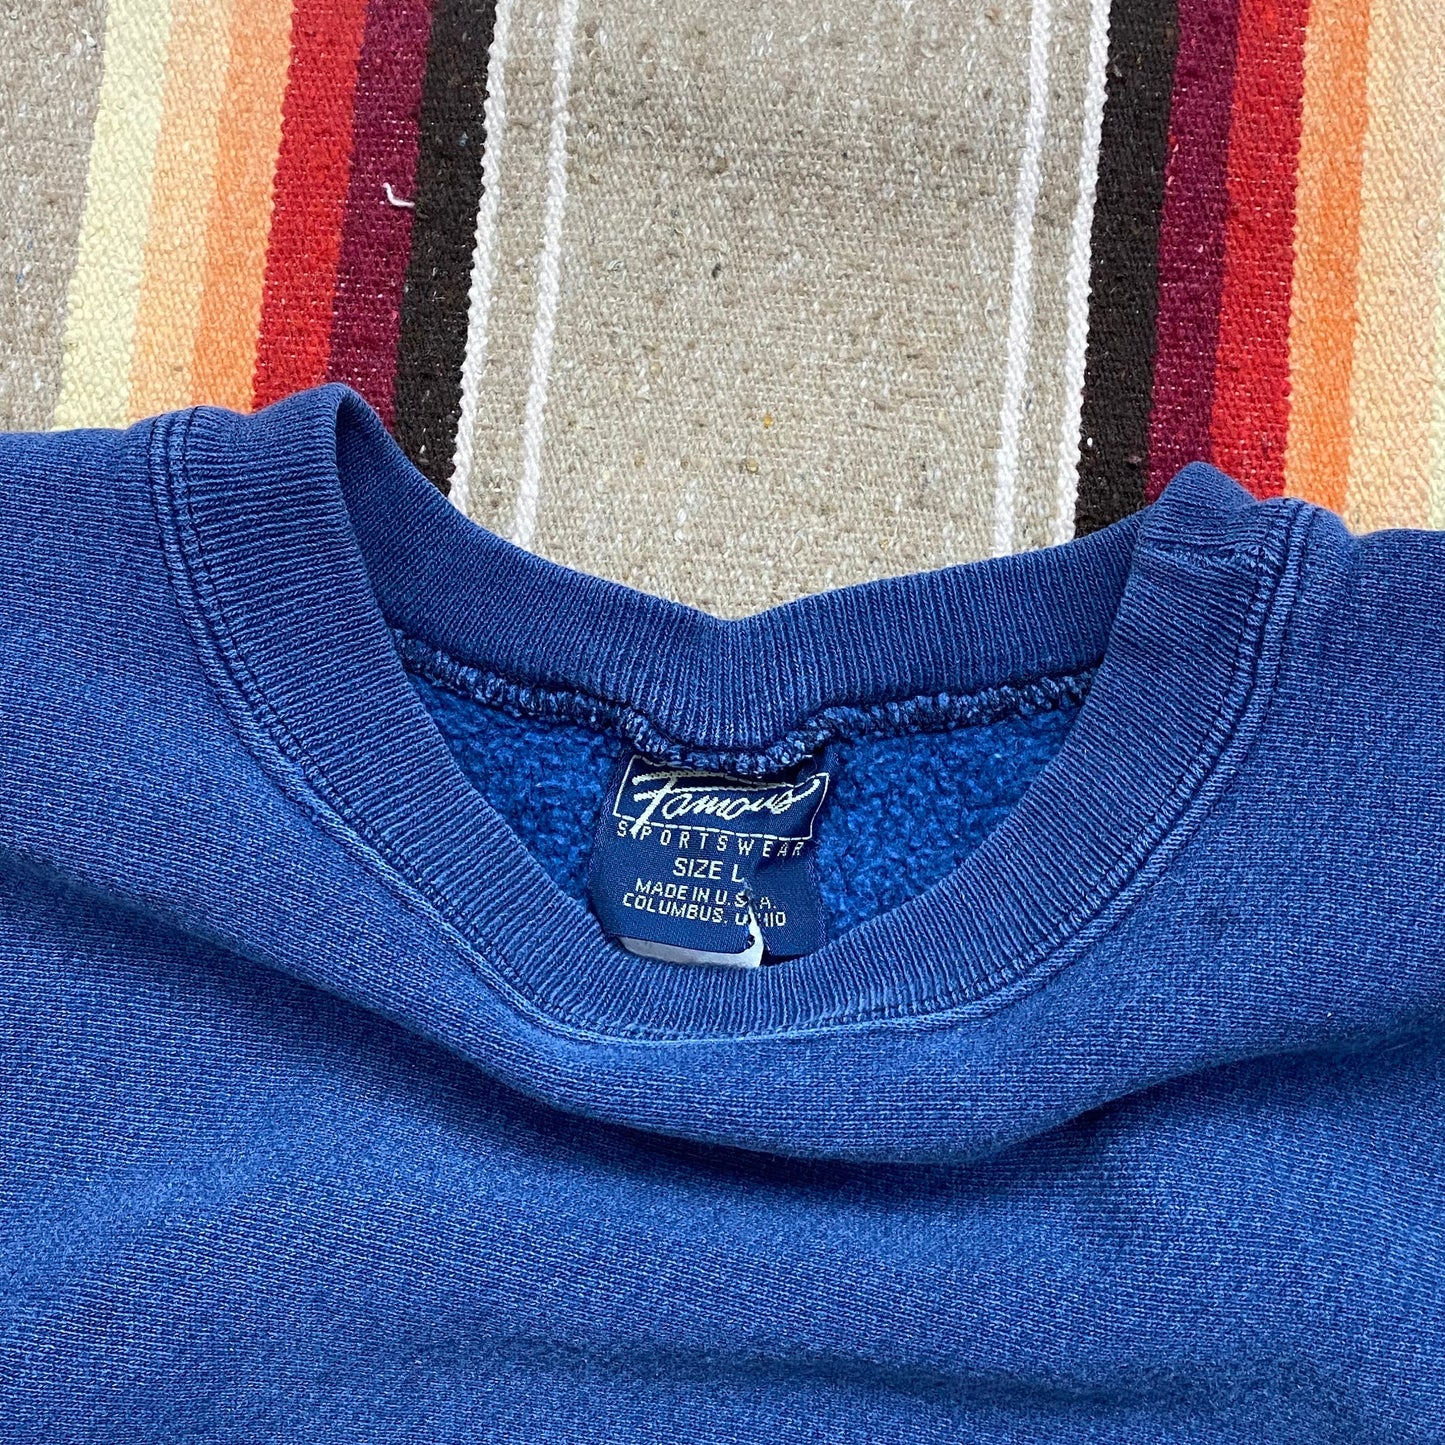 1980s/1990s Famous Sportswear Reverse Weave Style Sweatshirt Made in USA Size L